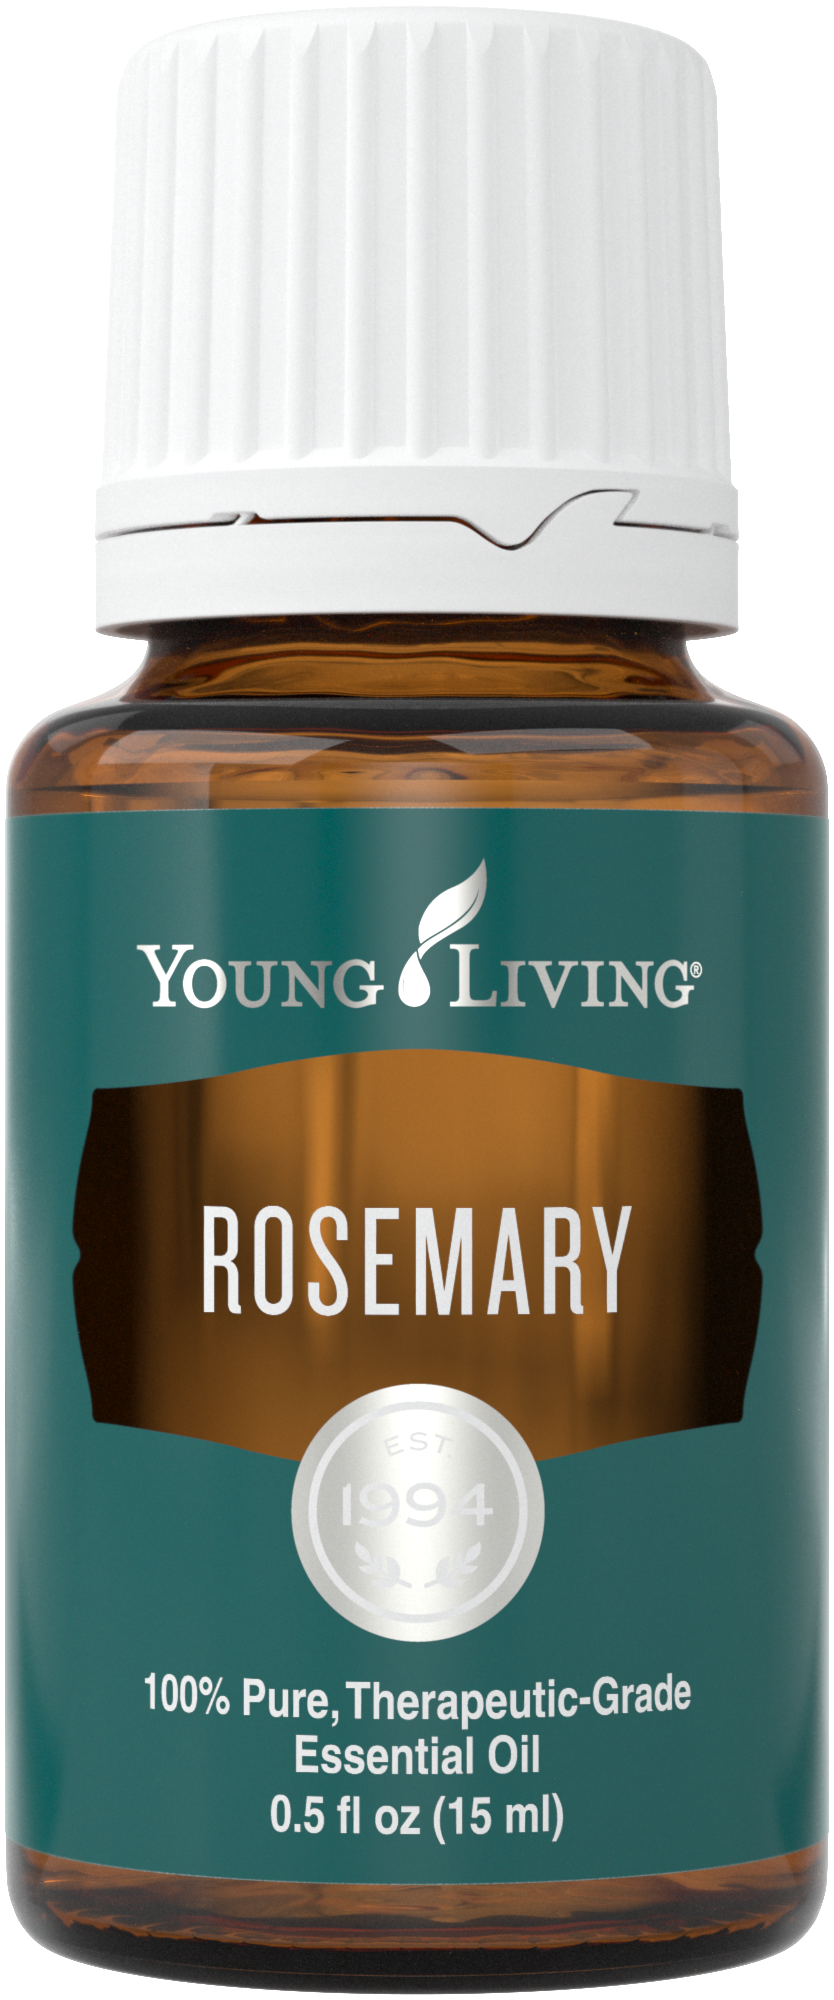 Resep Minyak Esensial Rosemary